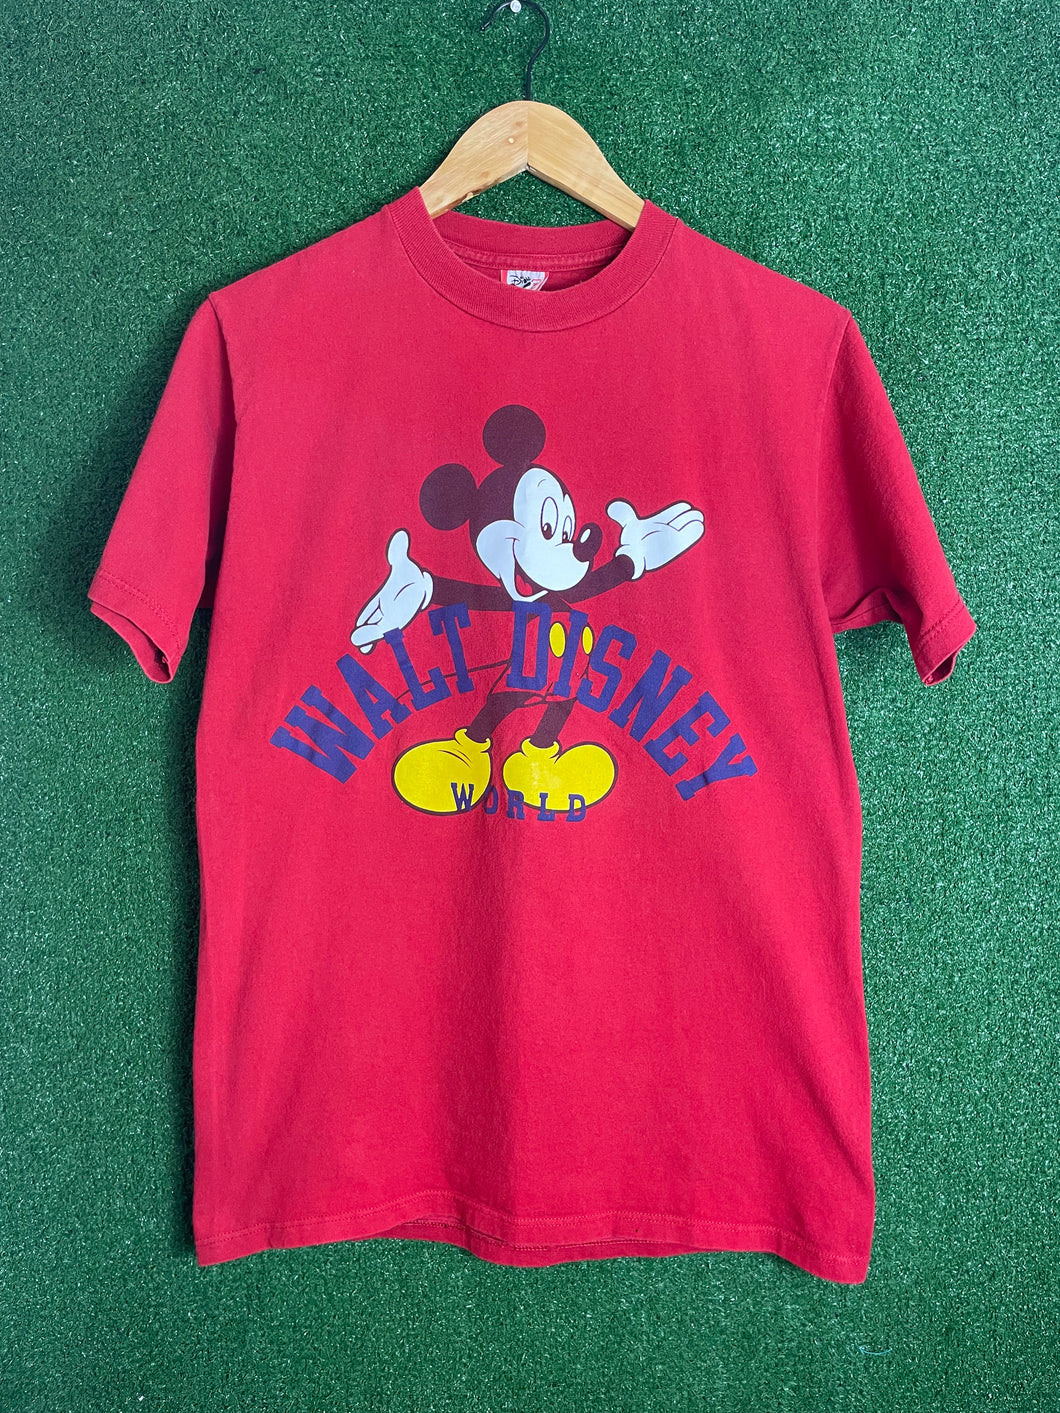 VTG 90s Walt Disney World Mickey Shirt Size Medium